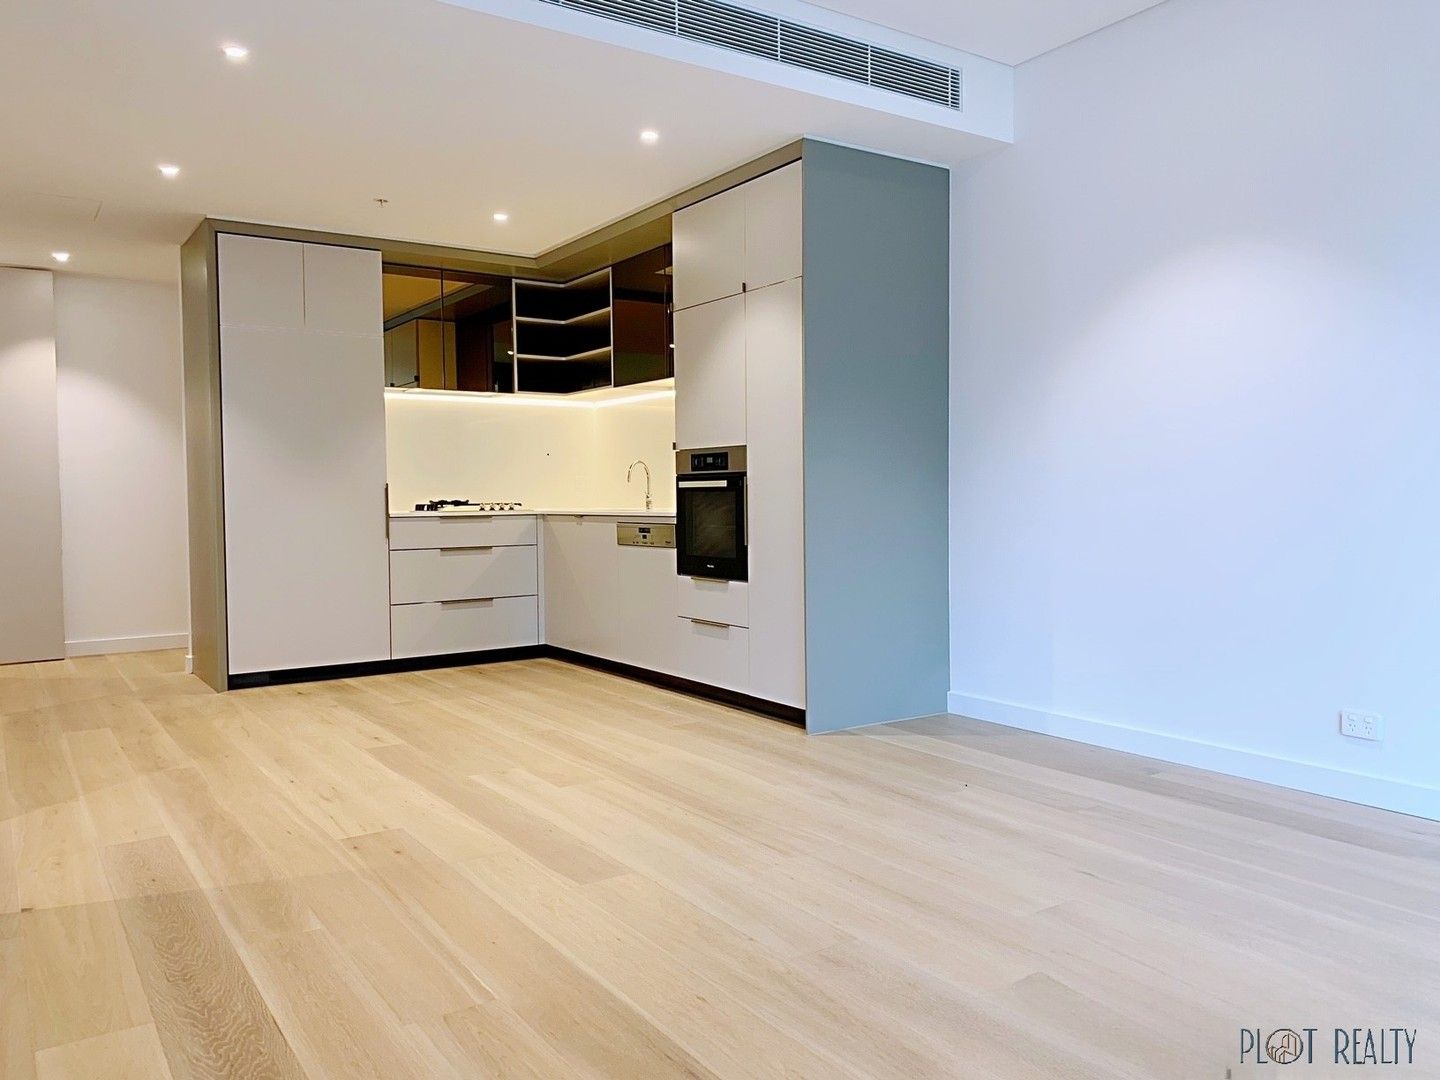 2 bedrooms Apartment / Unit / Flat in 204/83 Harbour Street HAYMARKET NSW, 2000